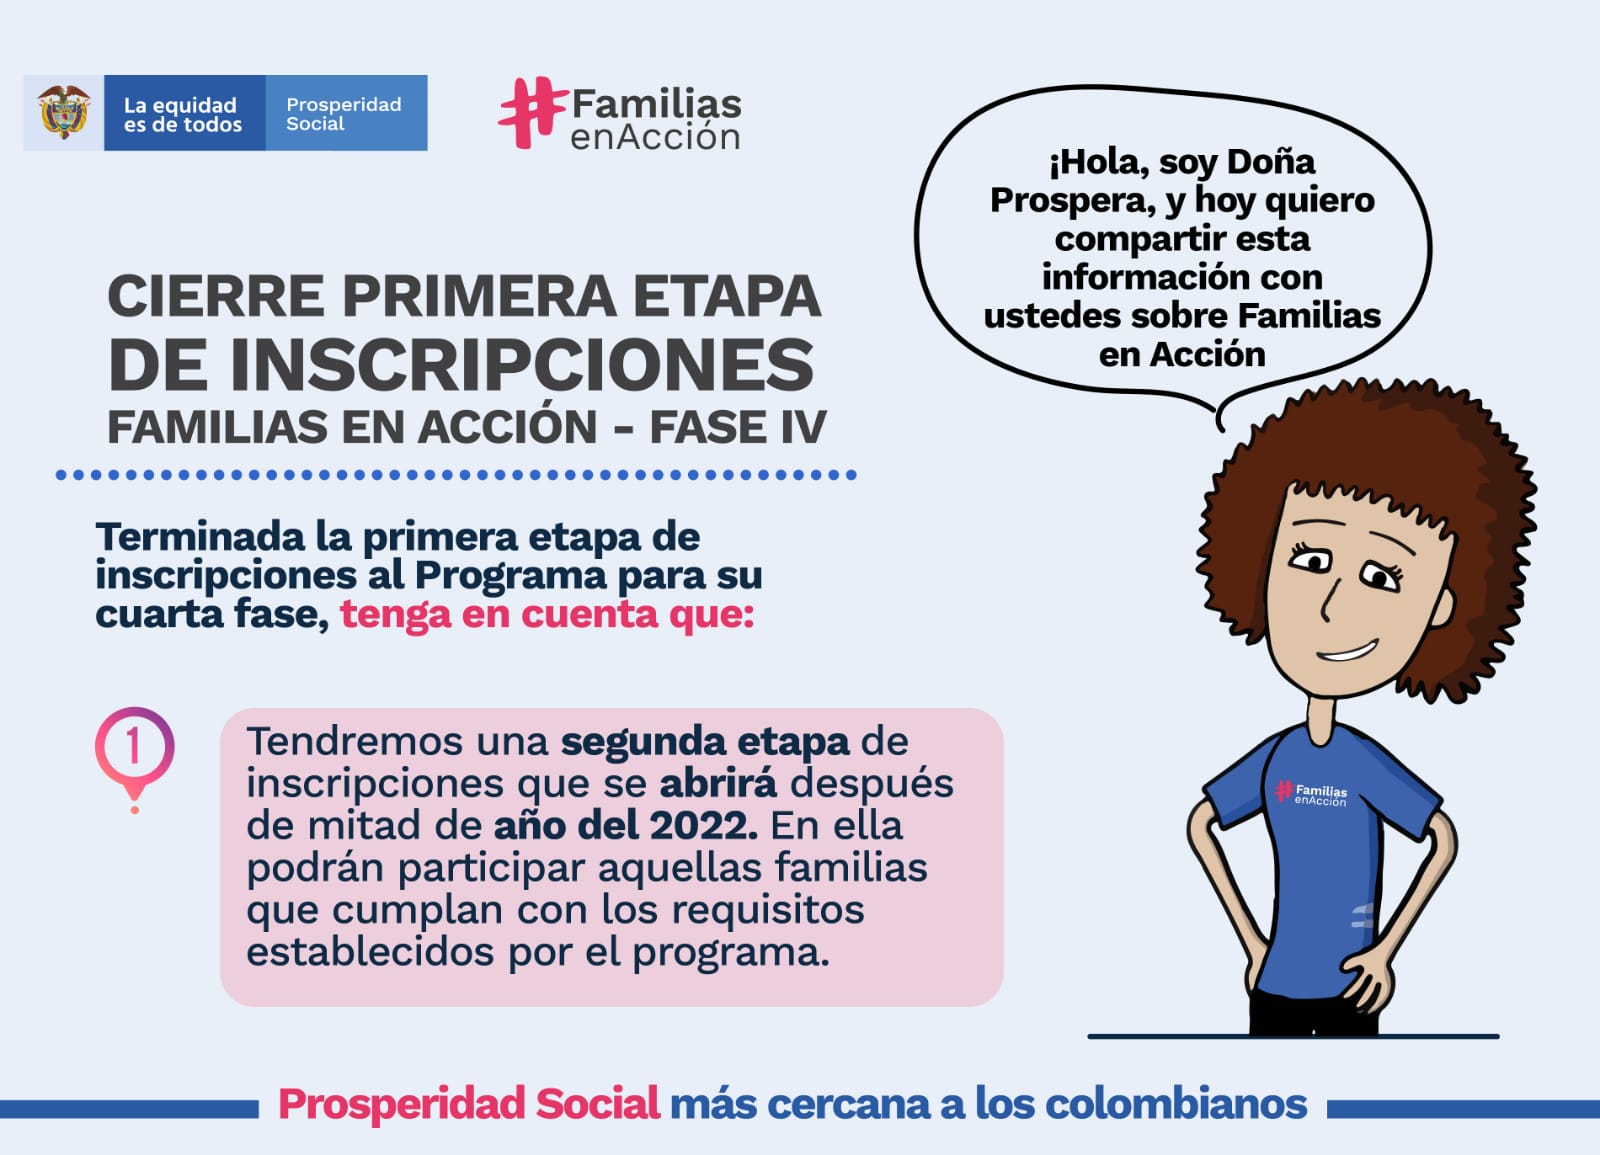  27 de octubre vence plazo para inscripción en familias en Acción en la capital del Meta